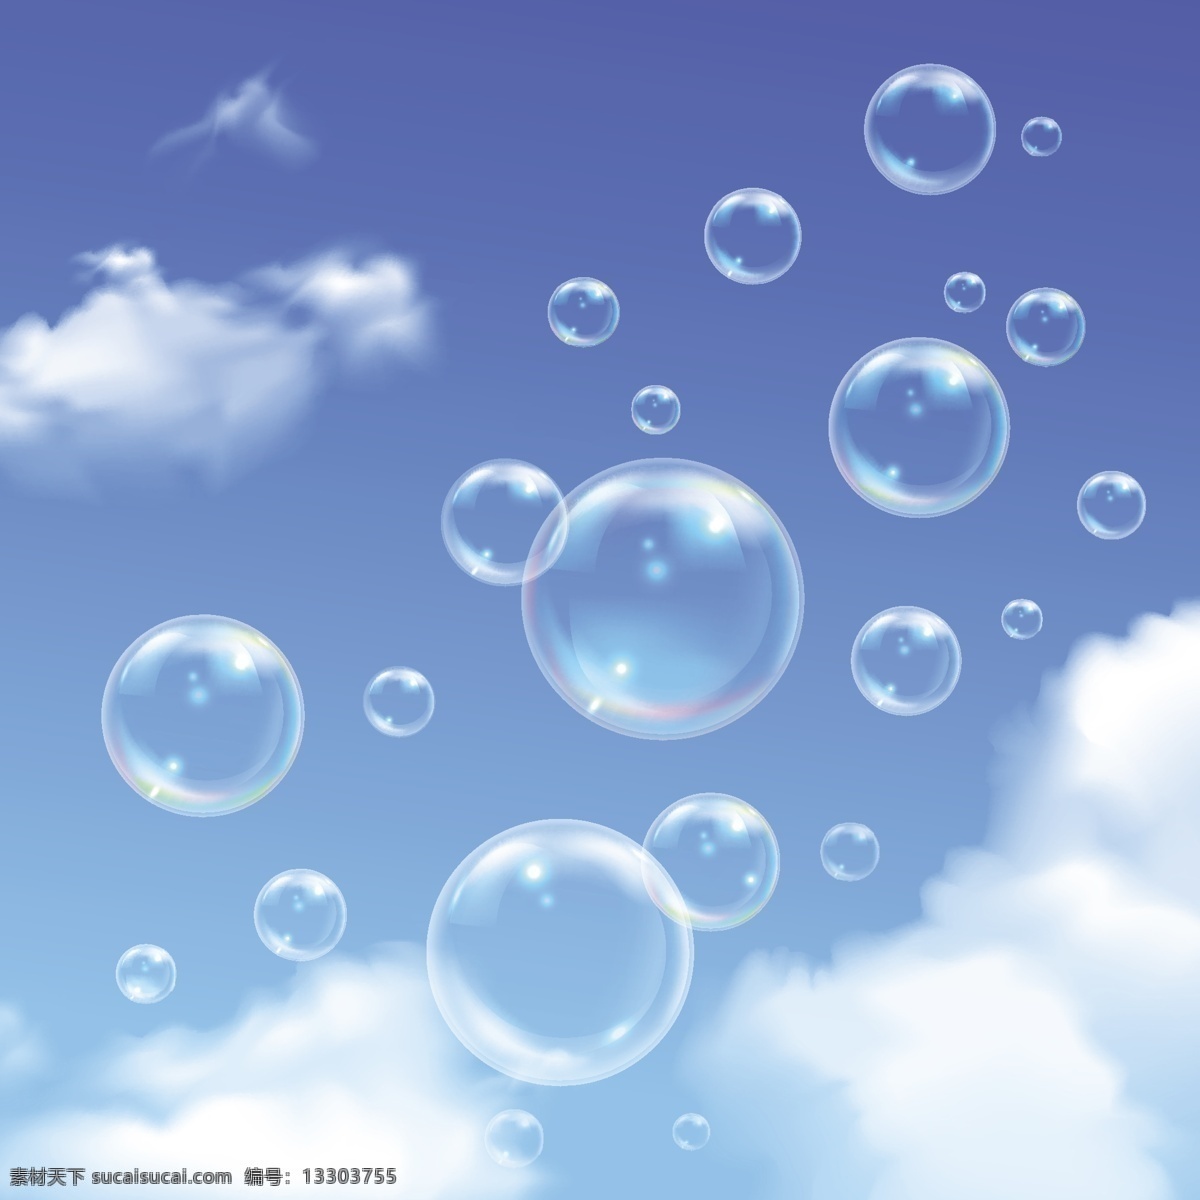 气泡 肥皂泡图片 粉色气泡背景 透明爱心 气泡背景 透明气泡背景 粉色 可爱 透明 爱心 背景 情人节 浪漫 泡沫 清洁 肥皂 新鲜 水球 彩色 多彩 球 泡泡